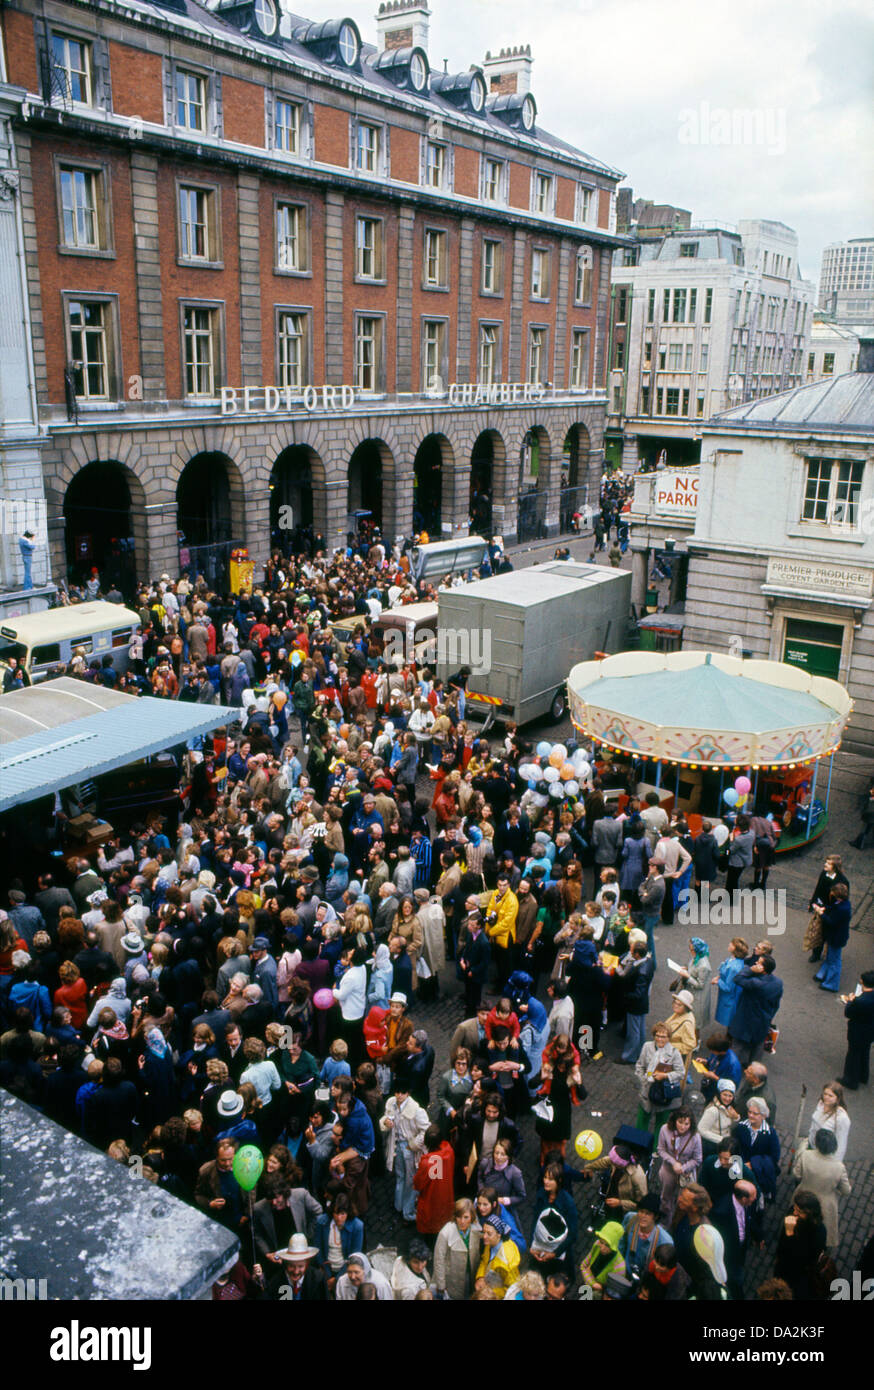 Menschenmenge, die Straßentheater auf dem alten Covent Garden Market und Blick auf die Bedford Chambers beobachten, schildert das Gebäude mit Bögen in London WC2 England Großbritannien 1973 KATHY DEWITT Stockfoto